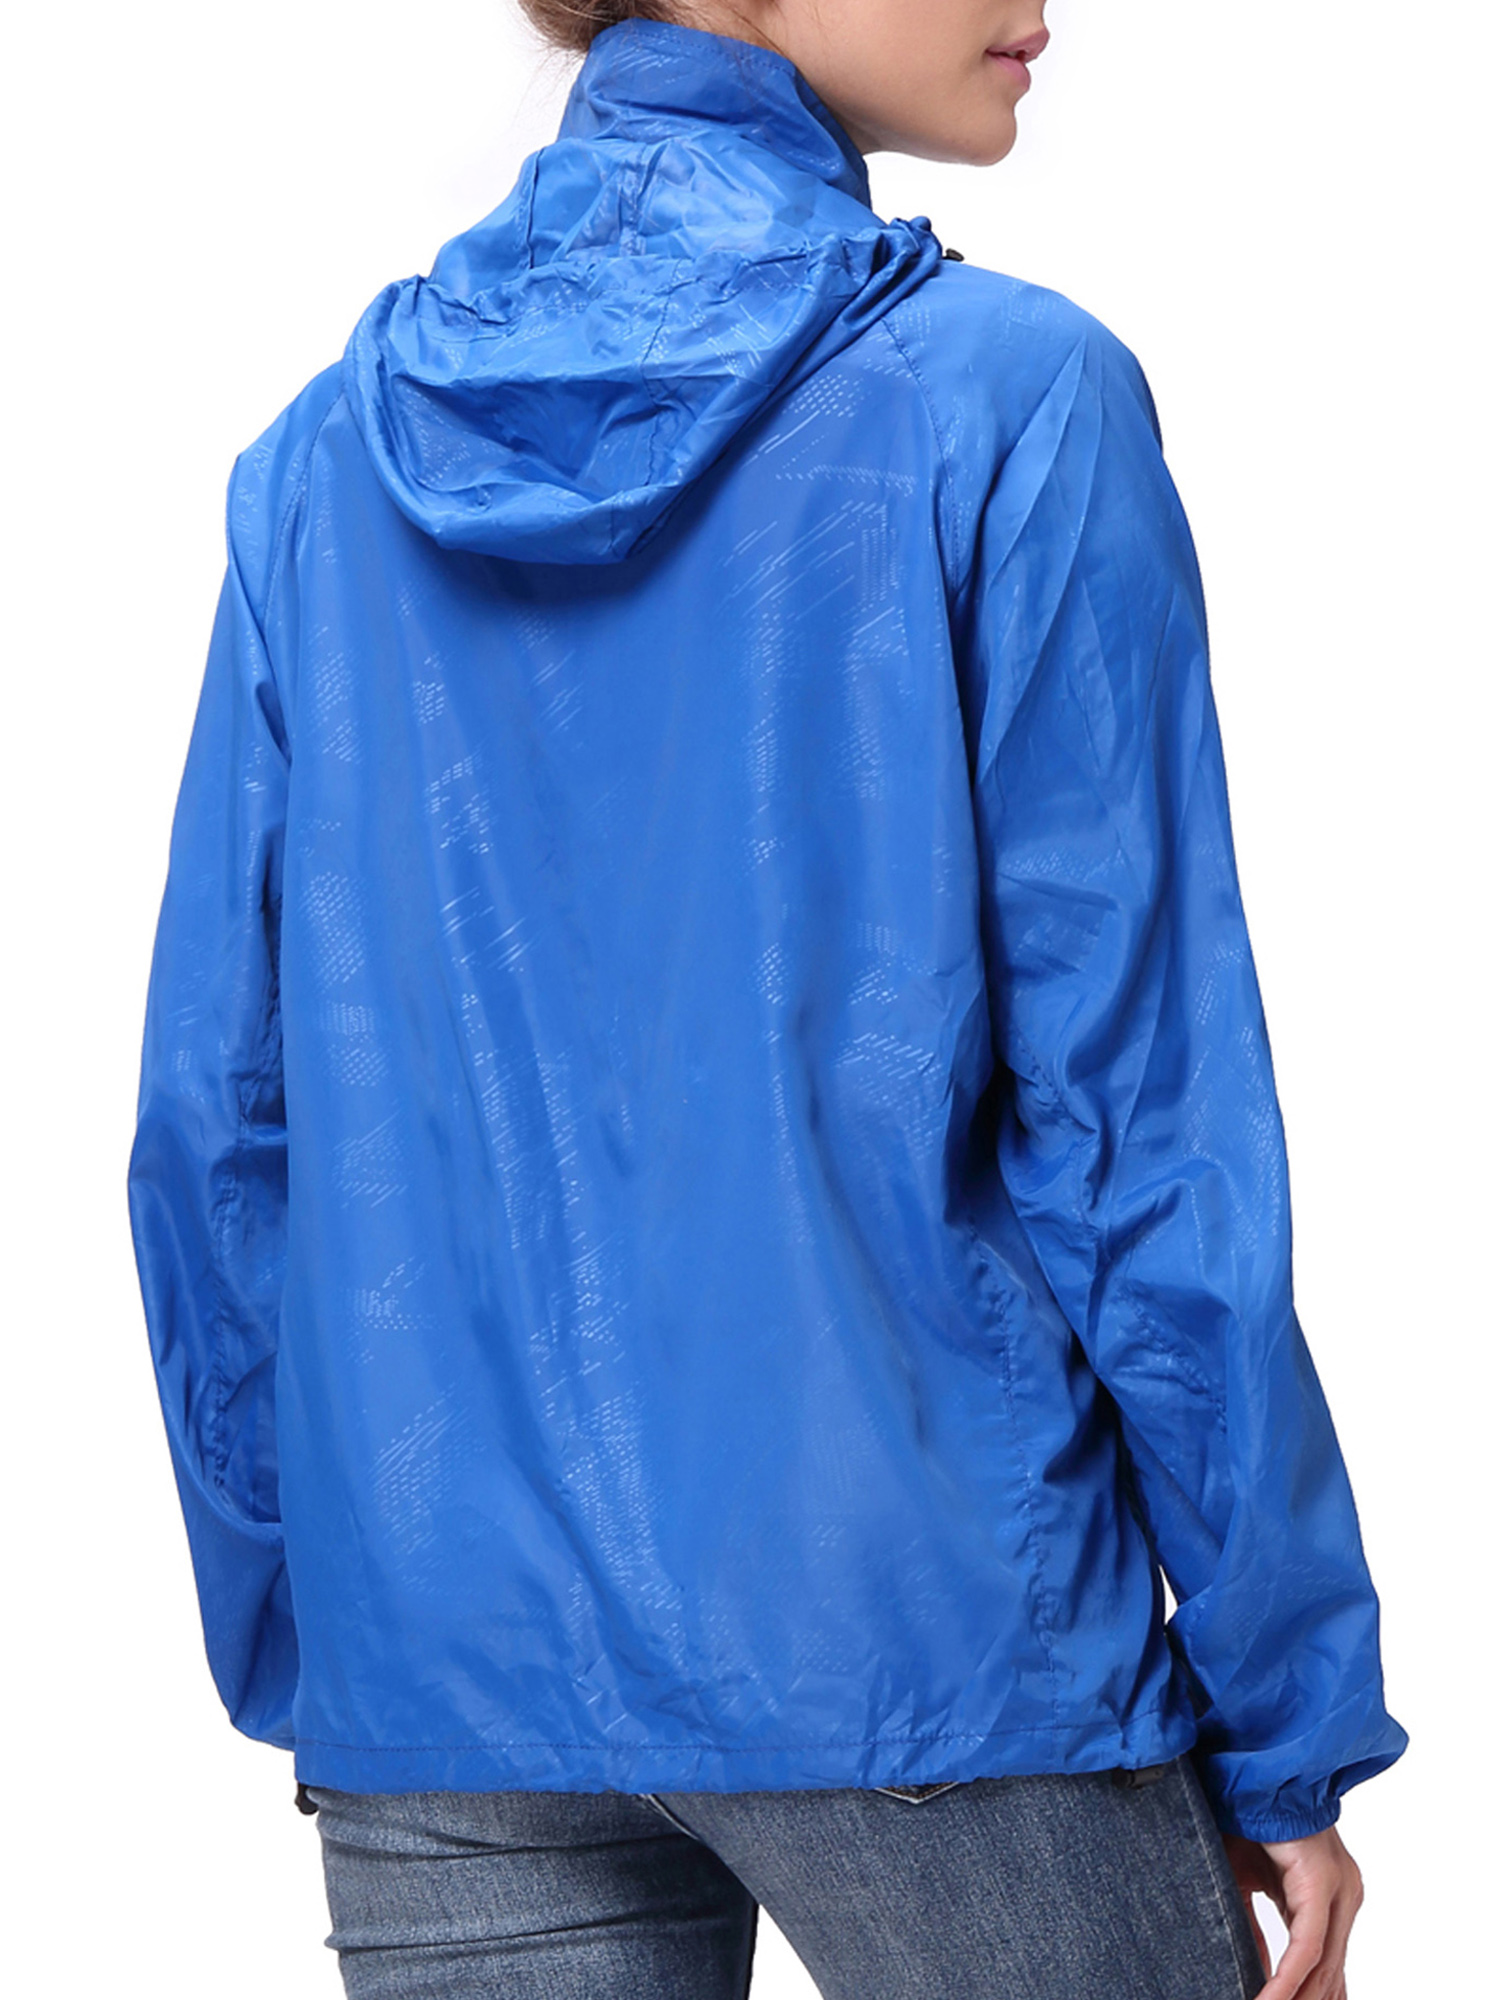 LELINTA Women Nylon Windbreaker Jacket Sport Casual Lightweight Zipper Hooded Outdoor Jacket, Black/ Royal Blue - image 3 of 9